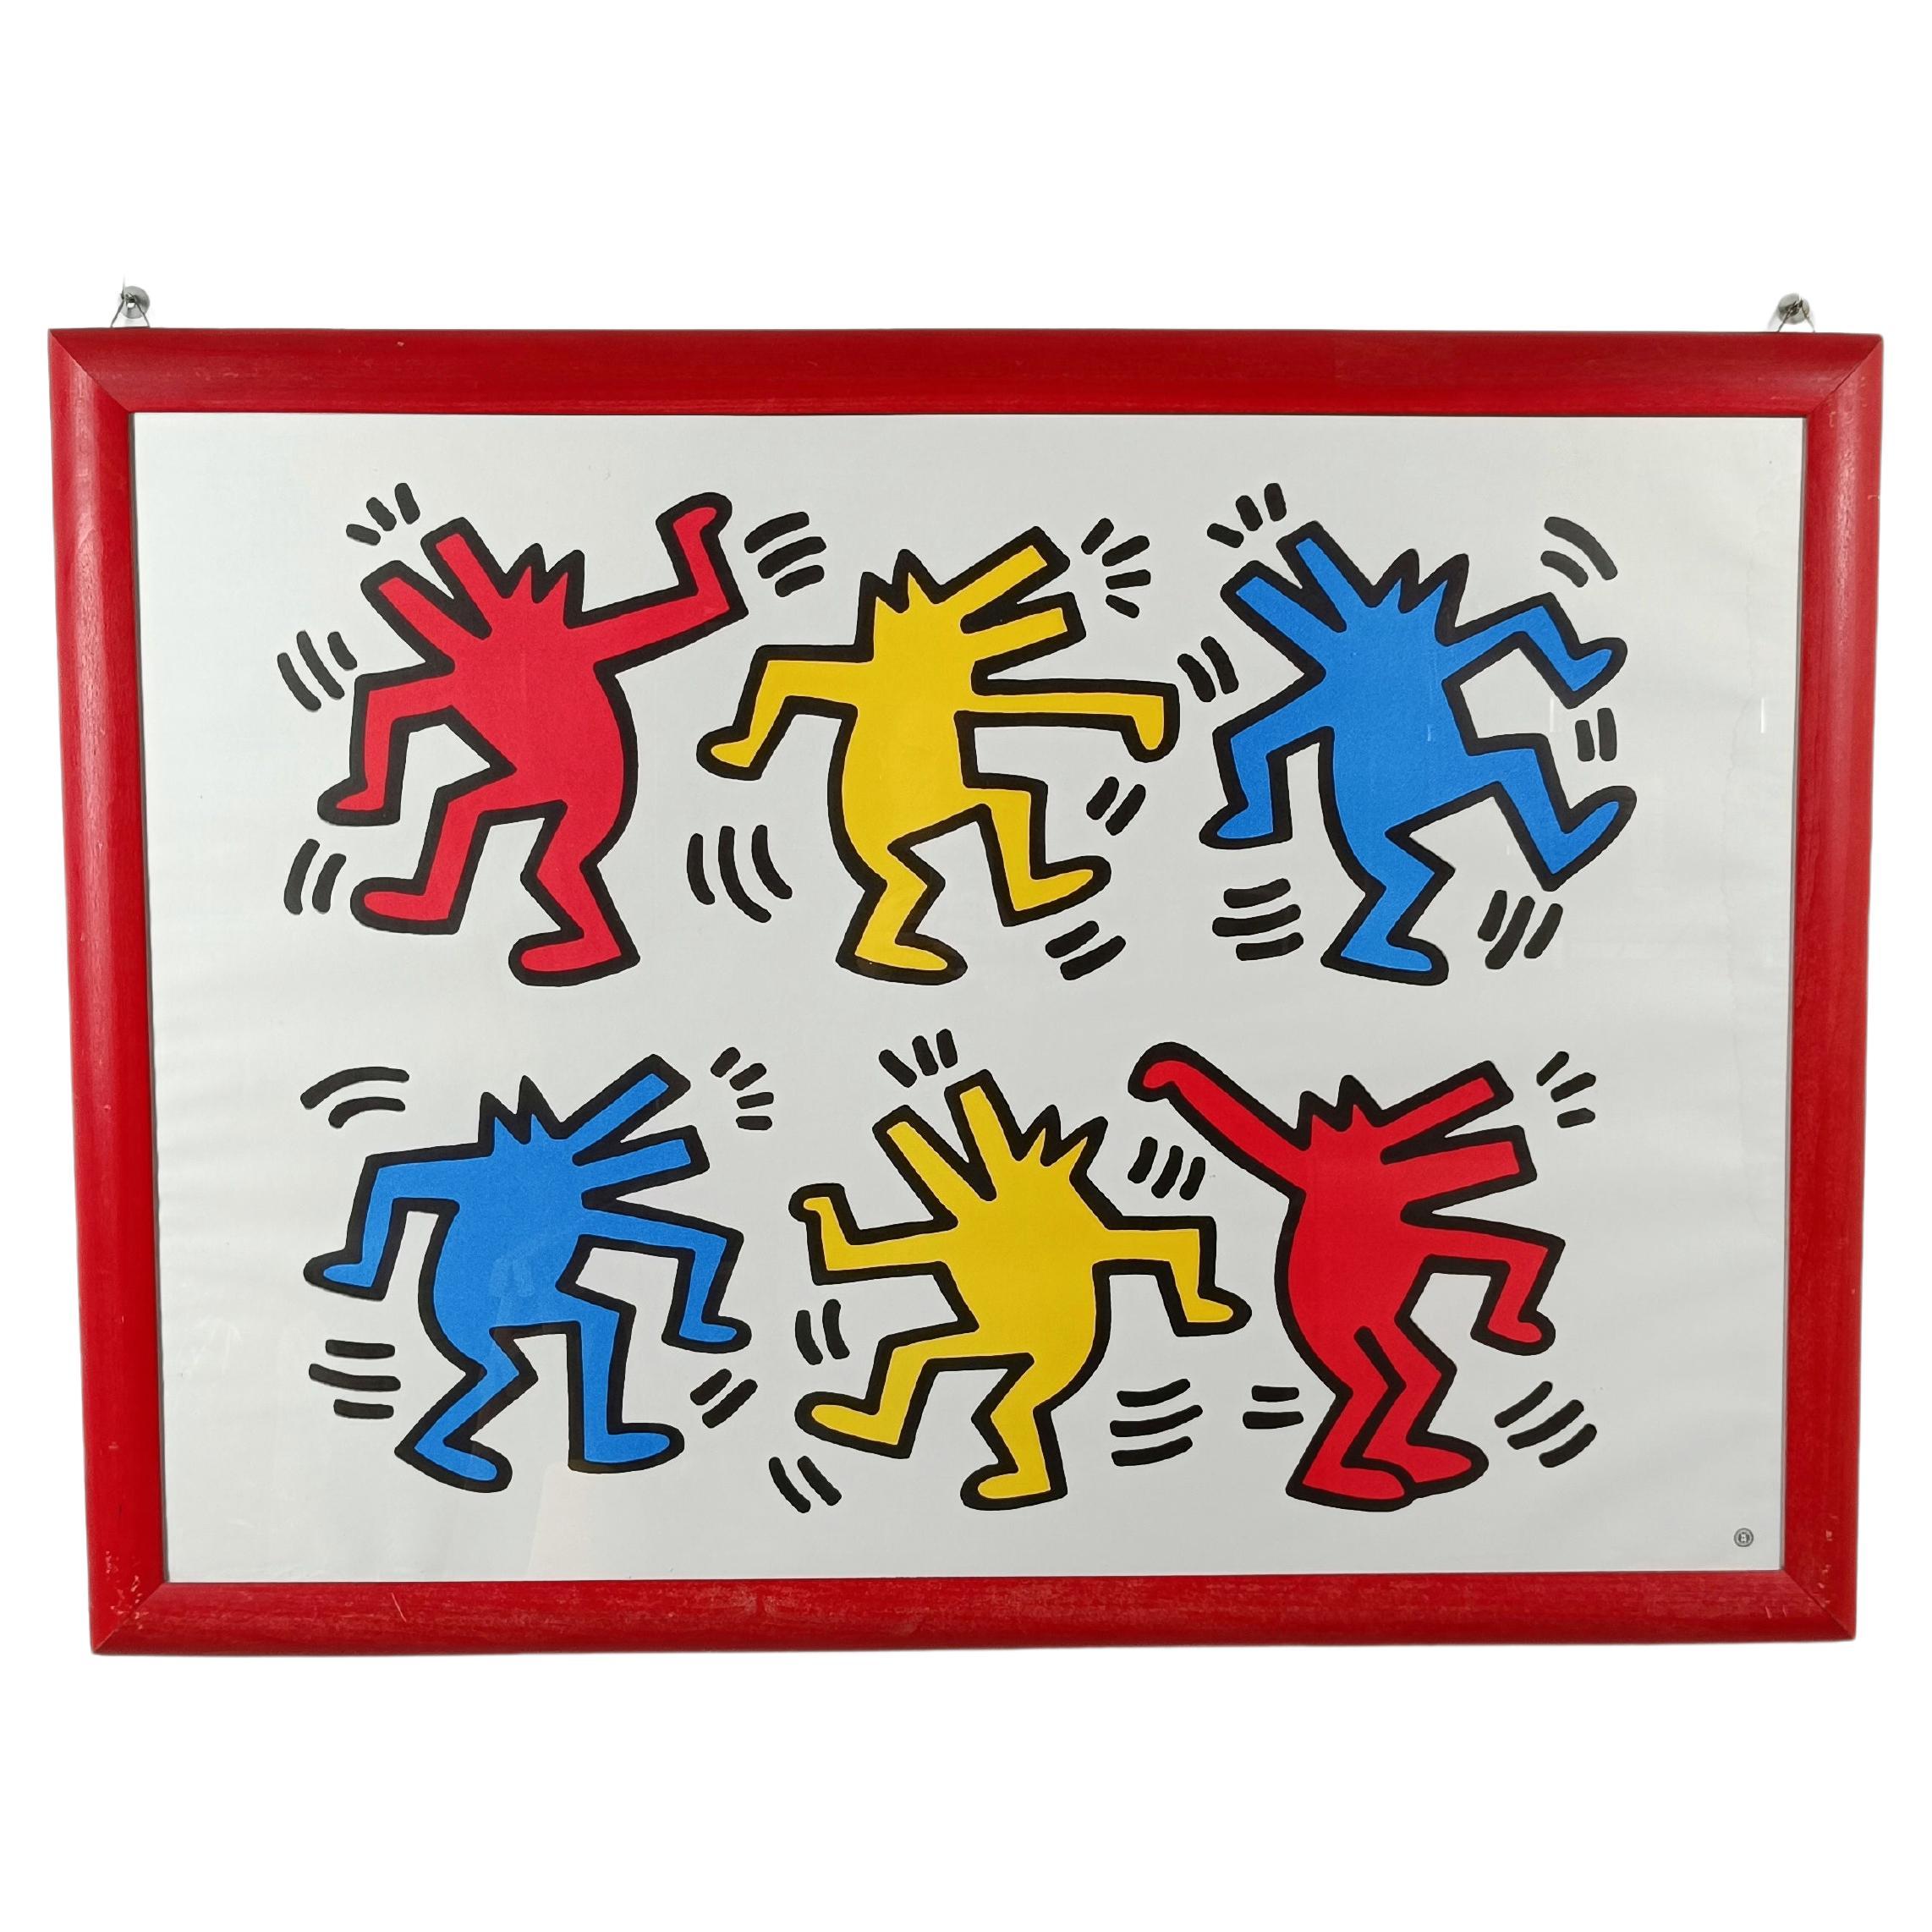 Poster von Keith Haring mit tanzenden Hunden, gedruckt in Frankreich von Nouvelles Imeges S.A. 